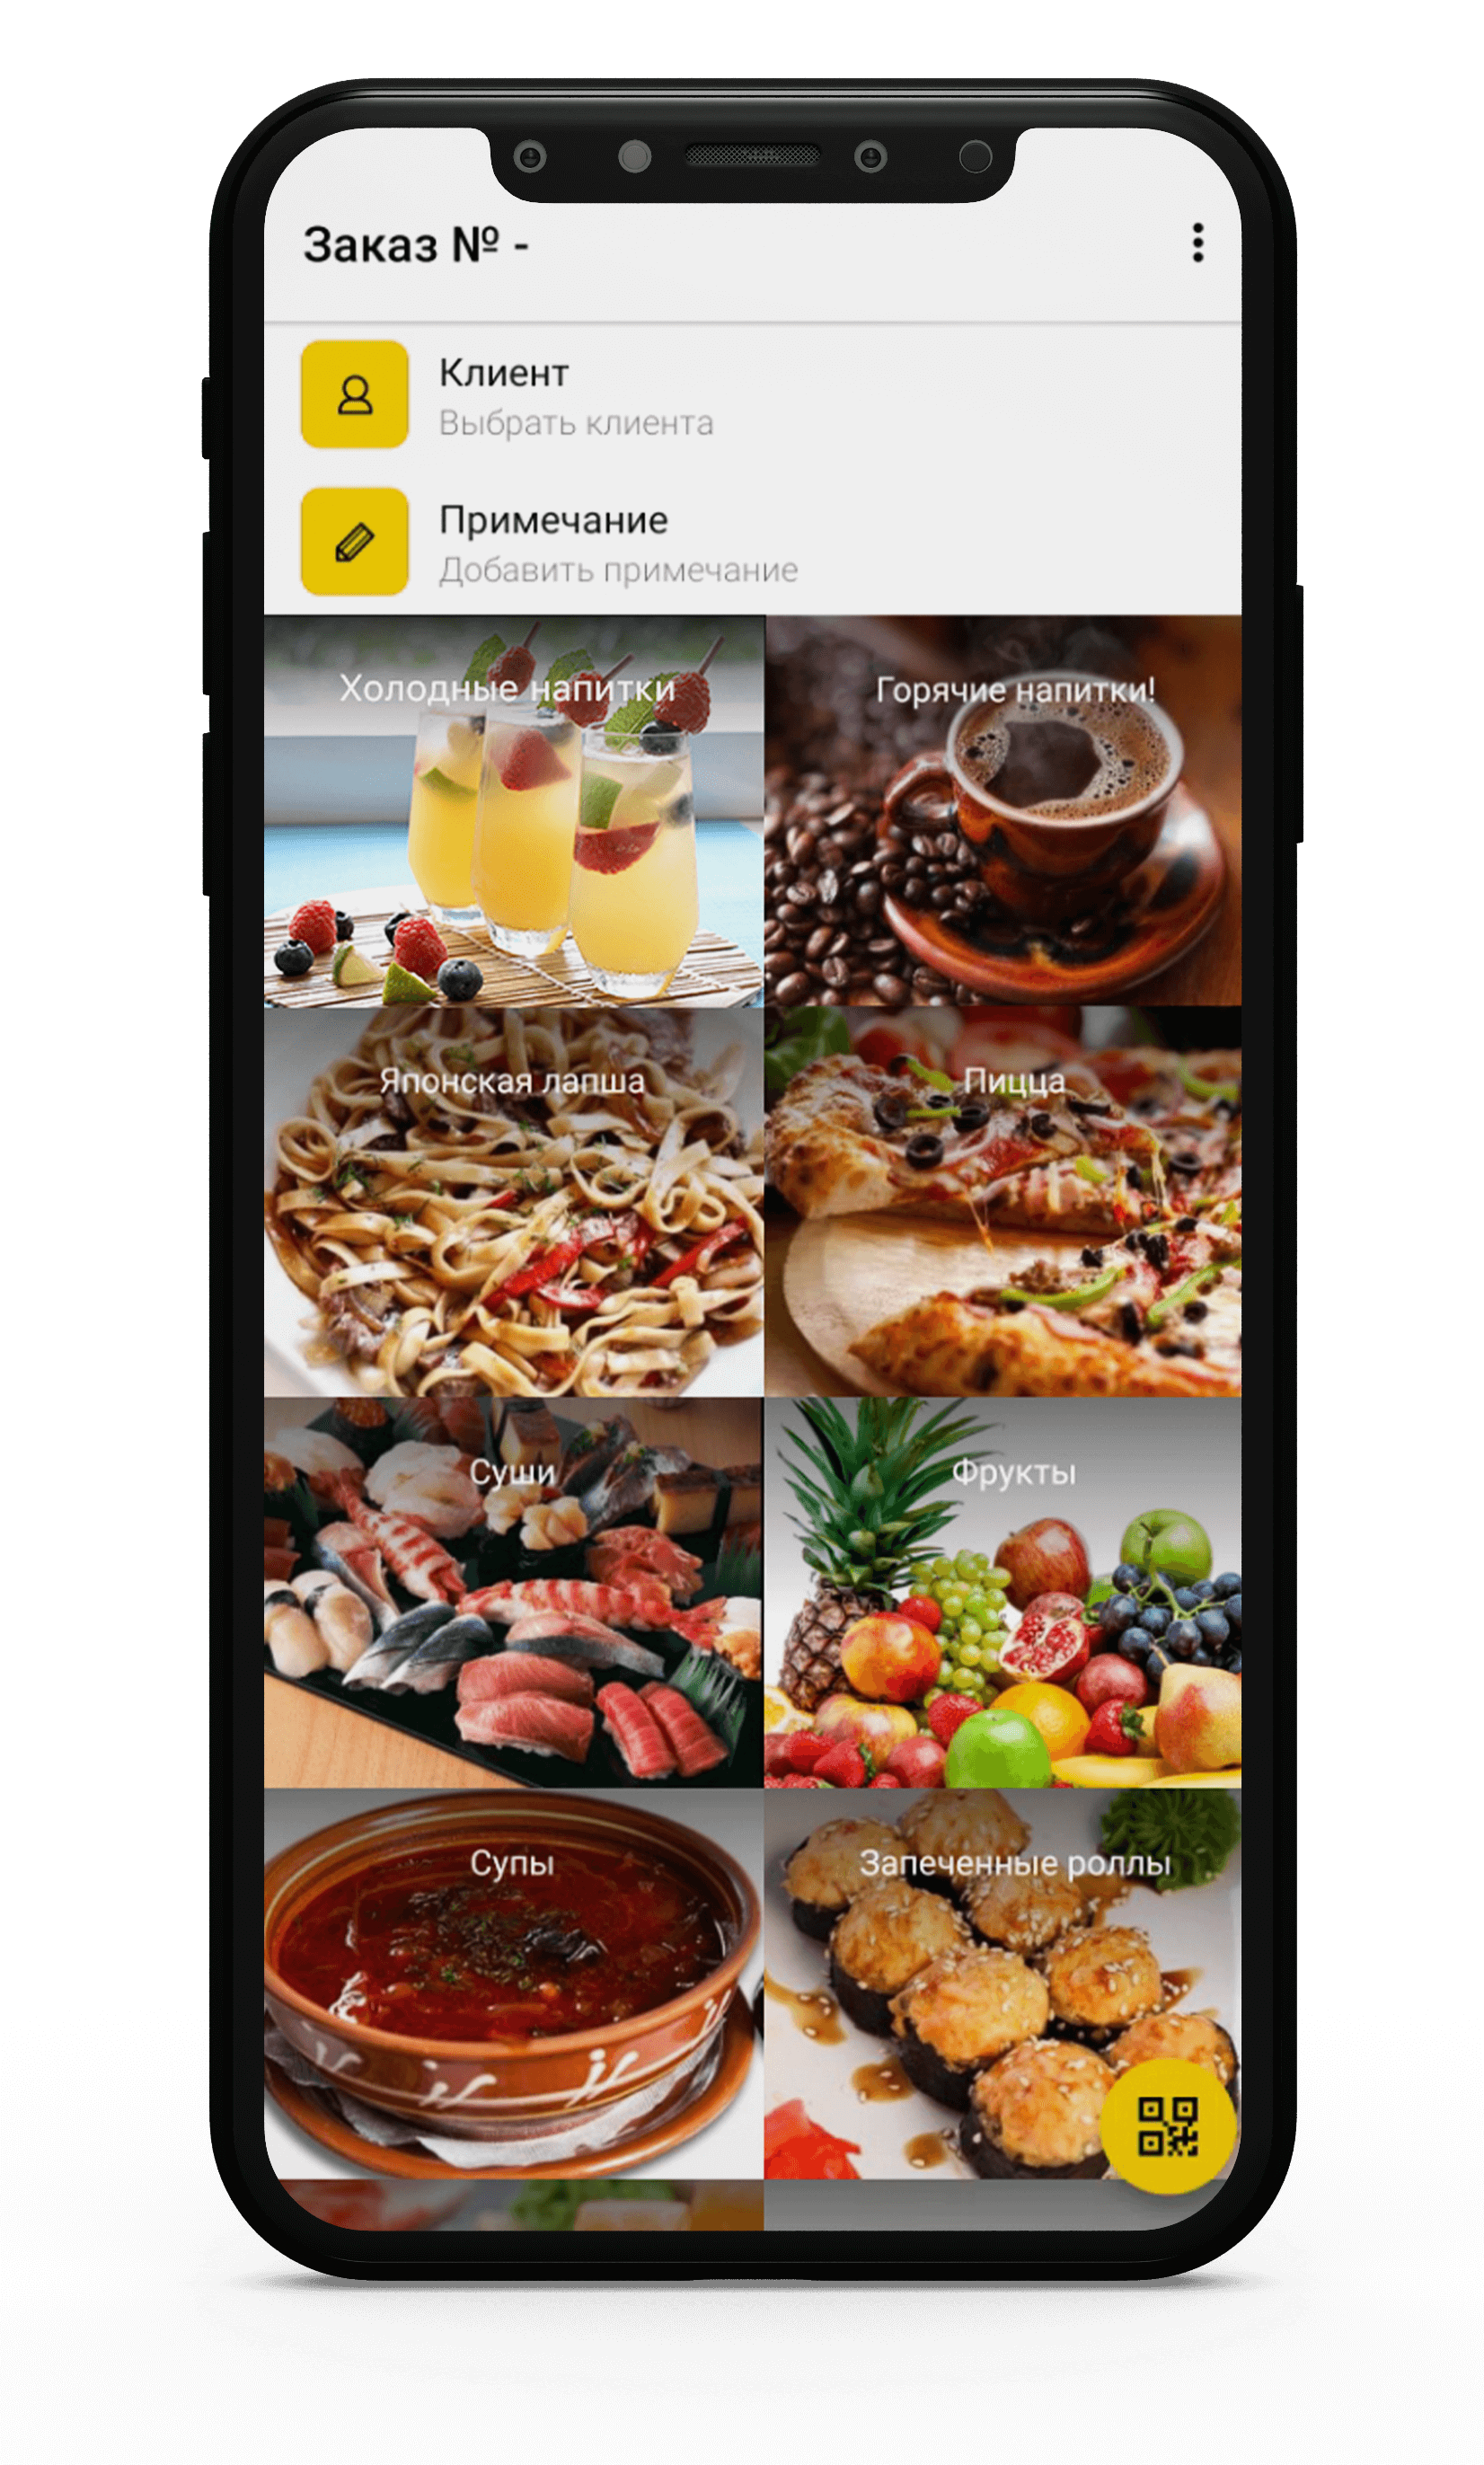 Фильтрация контента «для взрослых» - Приложение Яндекс для Android. Справка